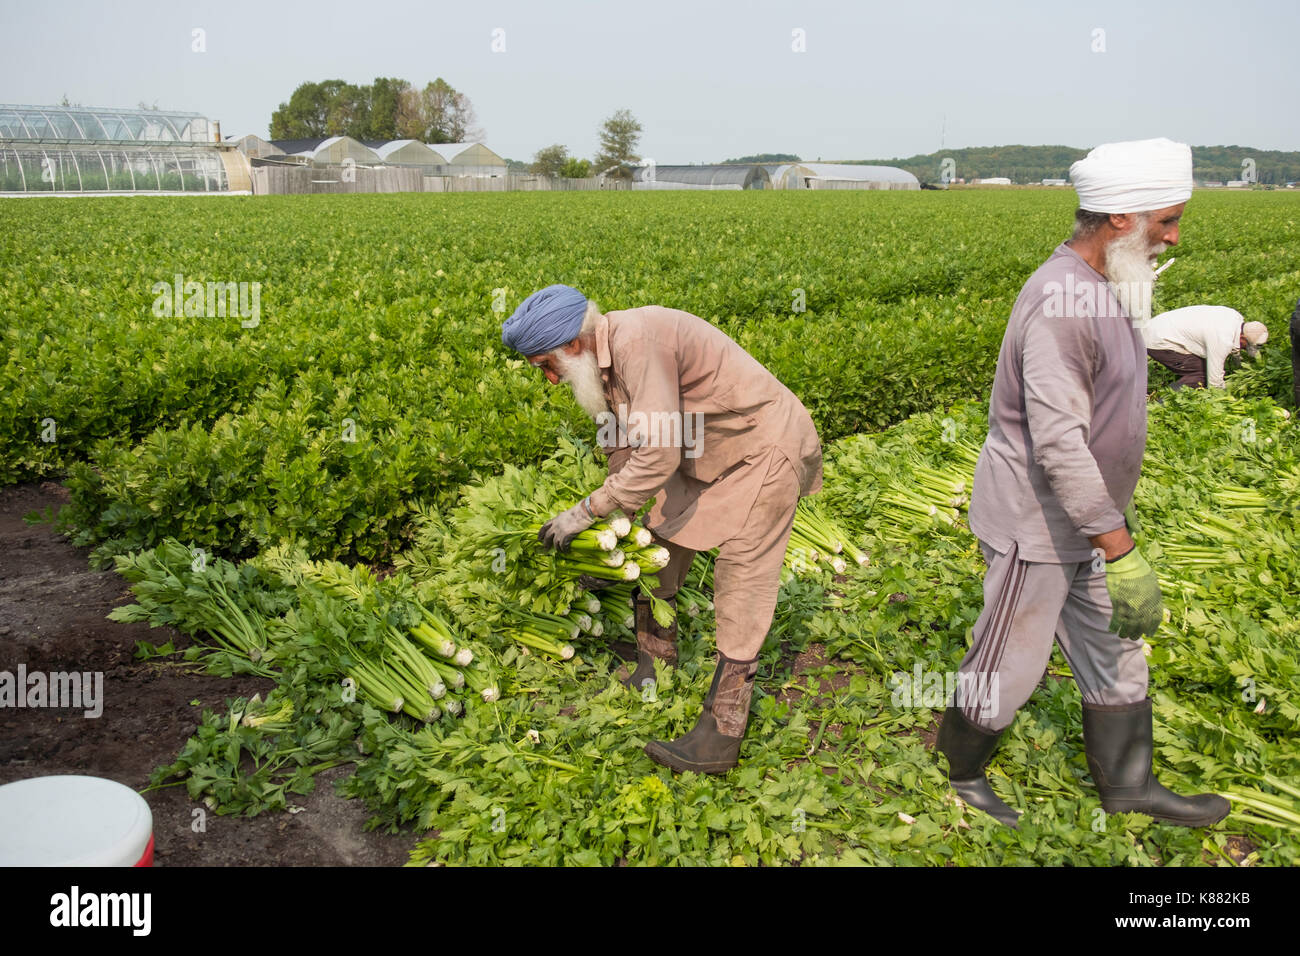 La récolte de l'agriculture et de la salade de céleri,onios par les travailleurs migrants, près de Toronto, Ontario, Canada, à Holland Marsh Banque D'Images